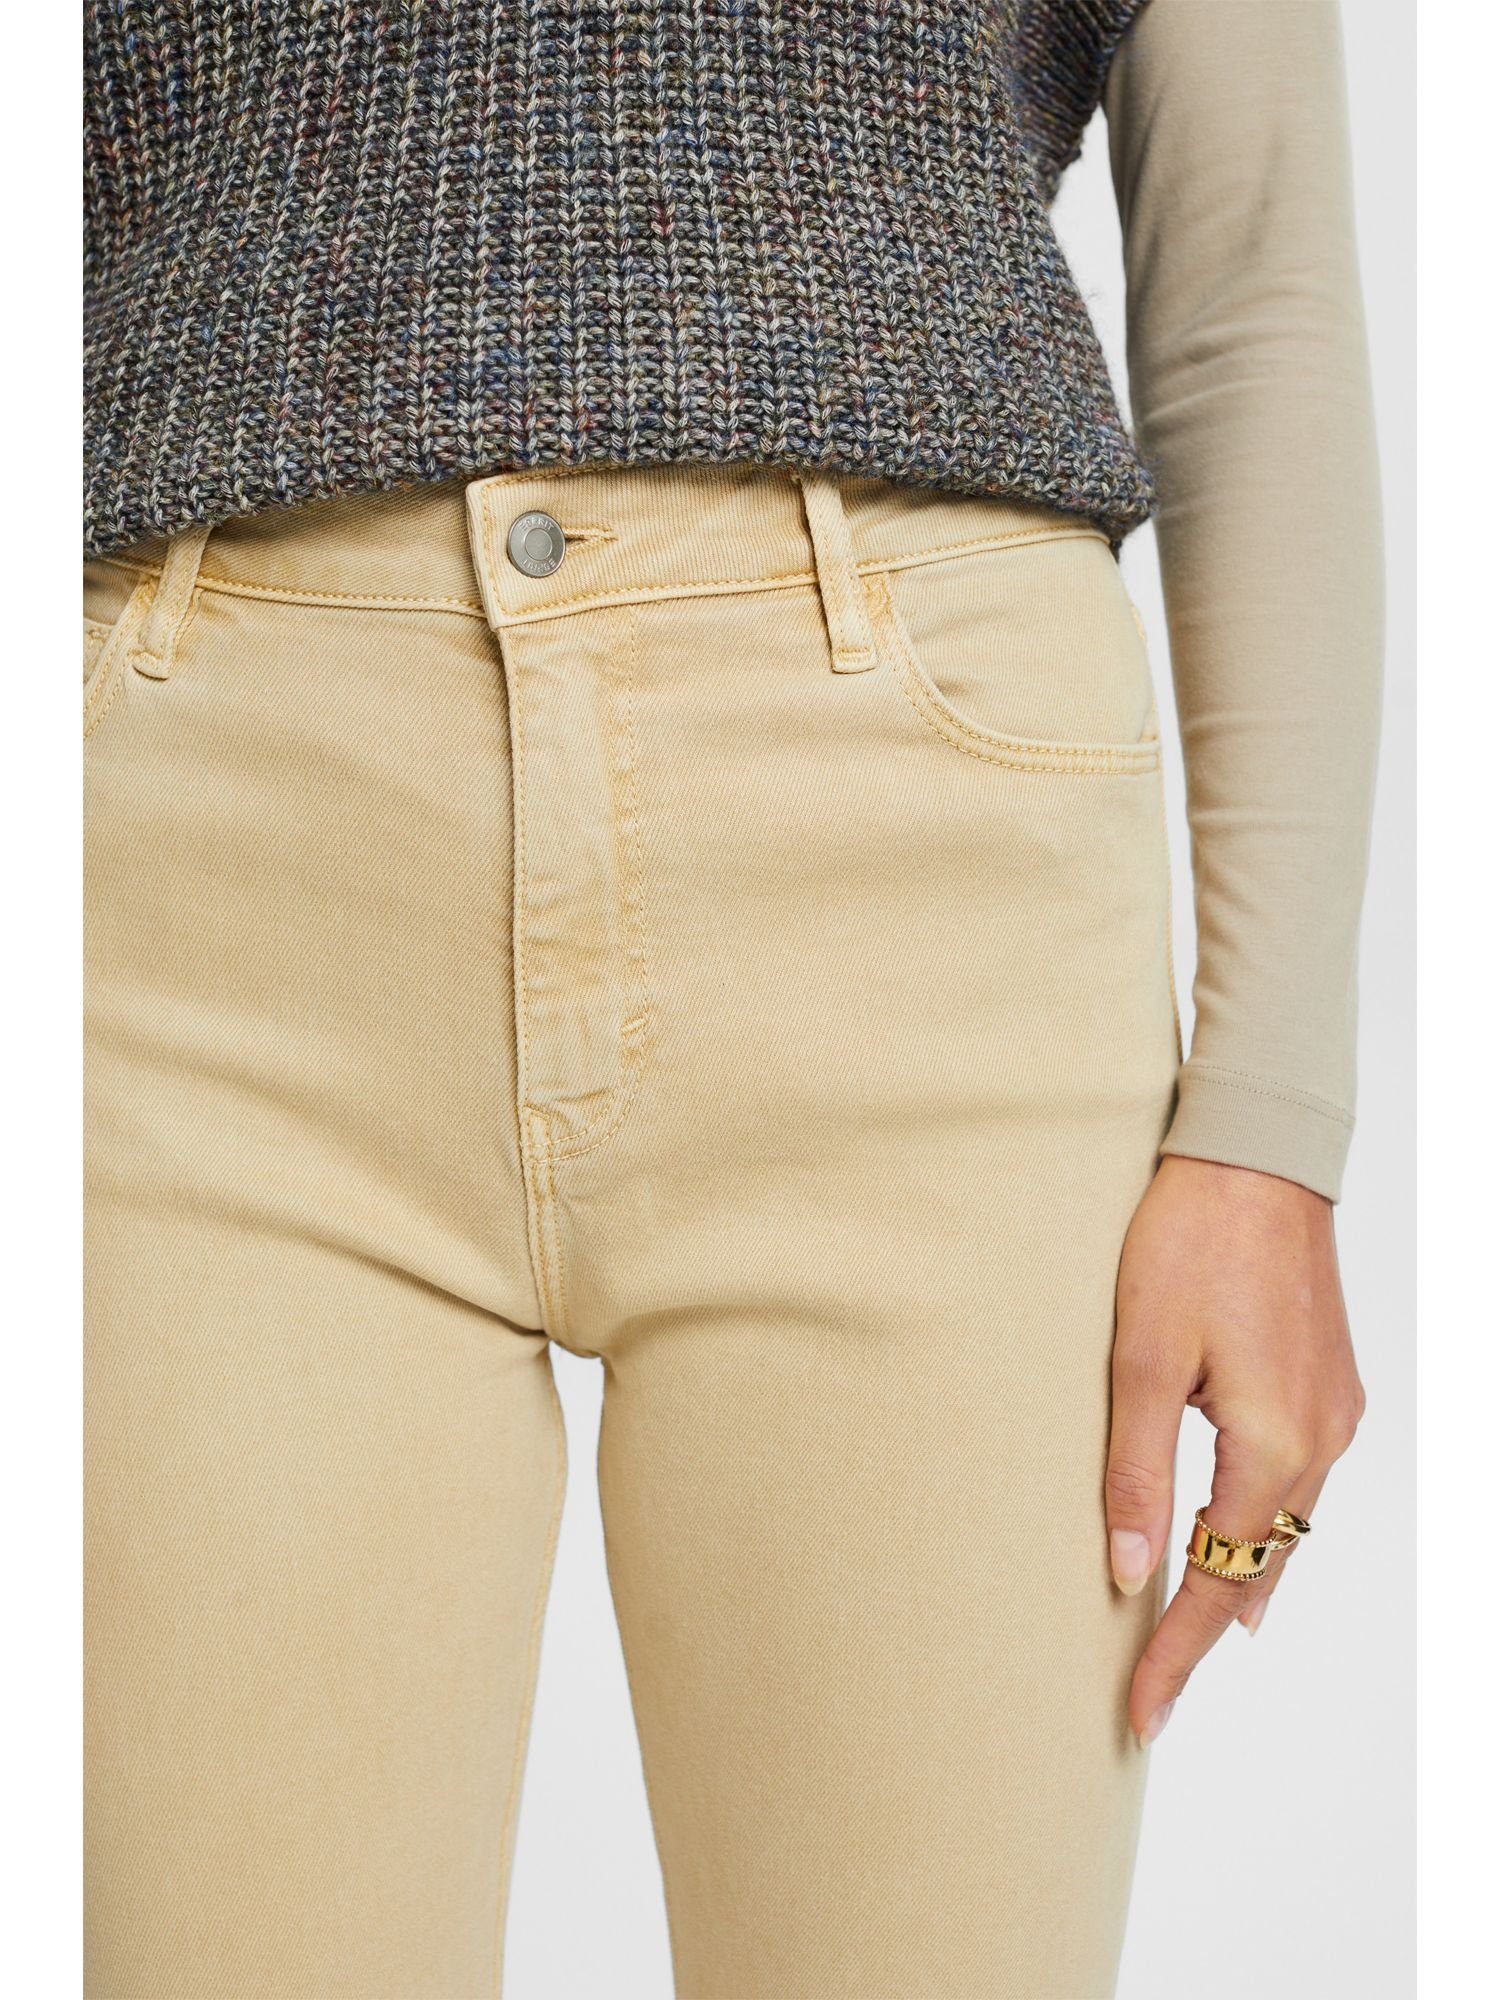 Bund und Twillhose Slim-fit-Jeans schmaler Passform hohem Esprit mit